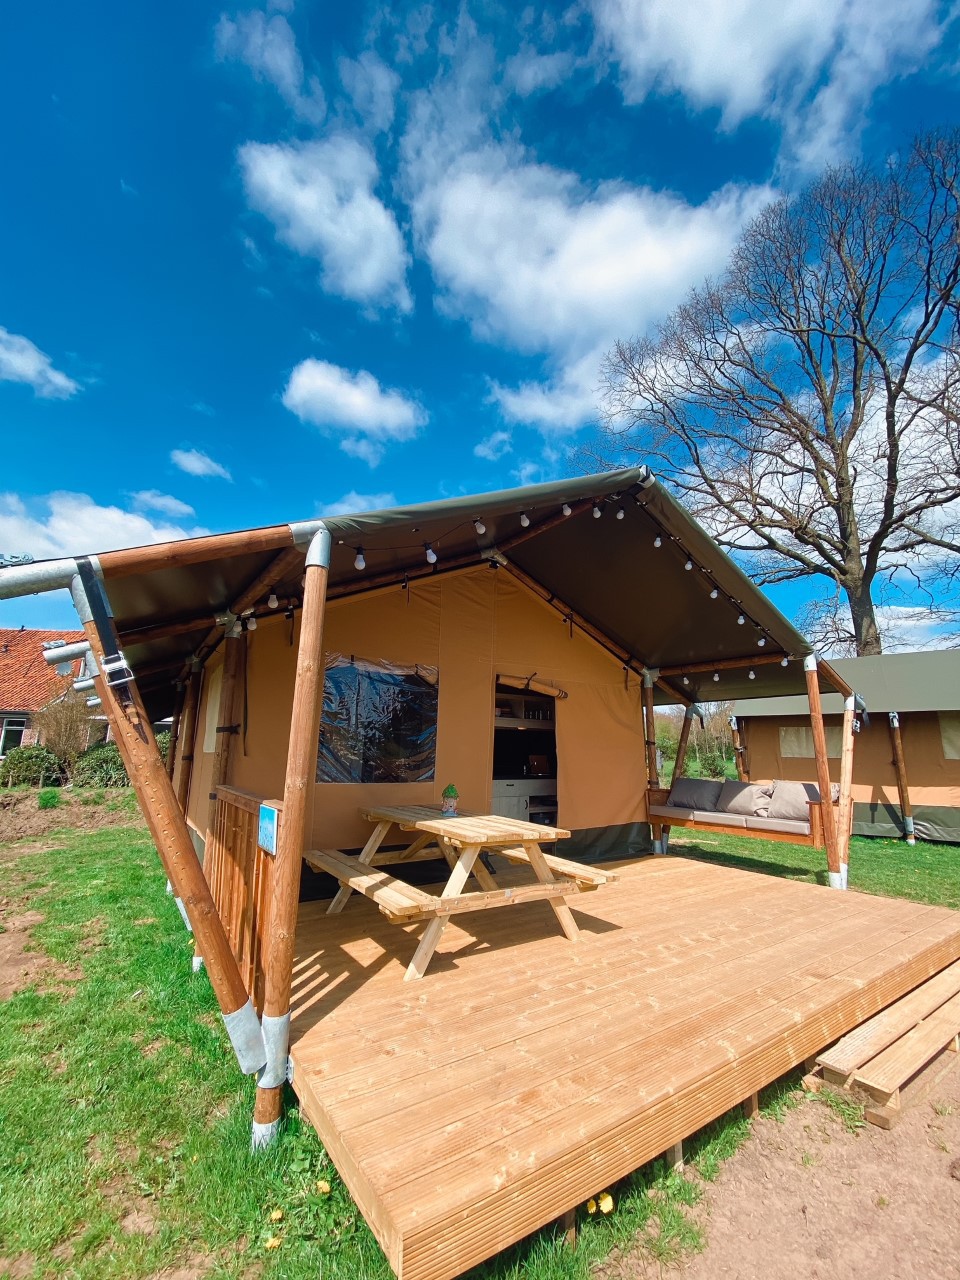 Safari tent De Korenbloem - Tents for Rent in Winterswijk, Gelderland,  Netherlands - Airbnb